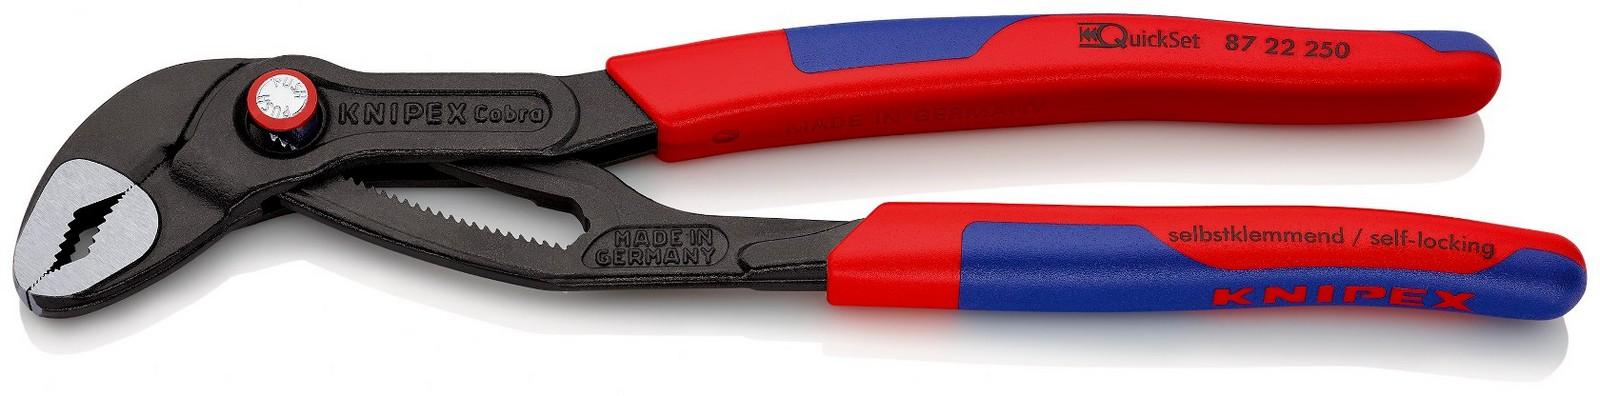 KNIPEX Papagaj - cevna klešta Cobra QuickSet 2 87 22 250 crveno-plava